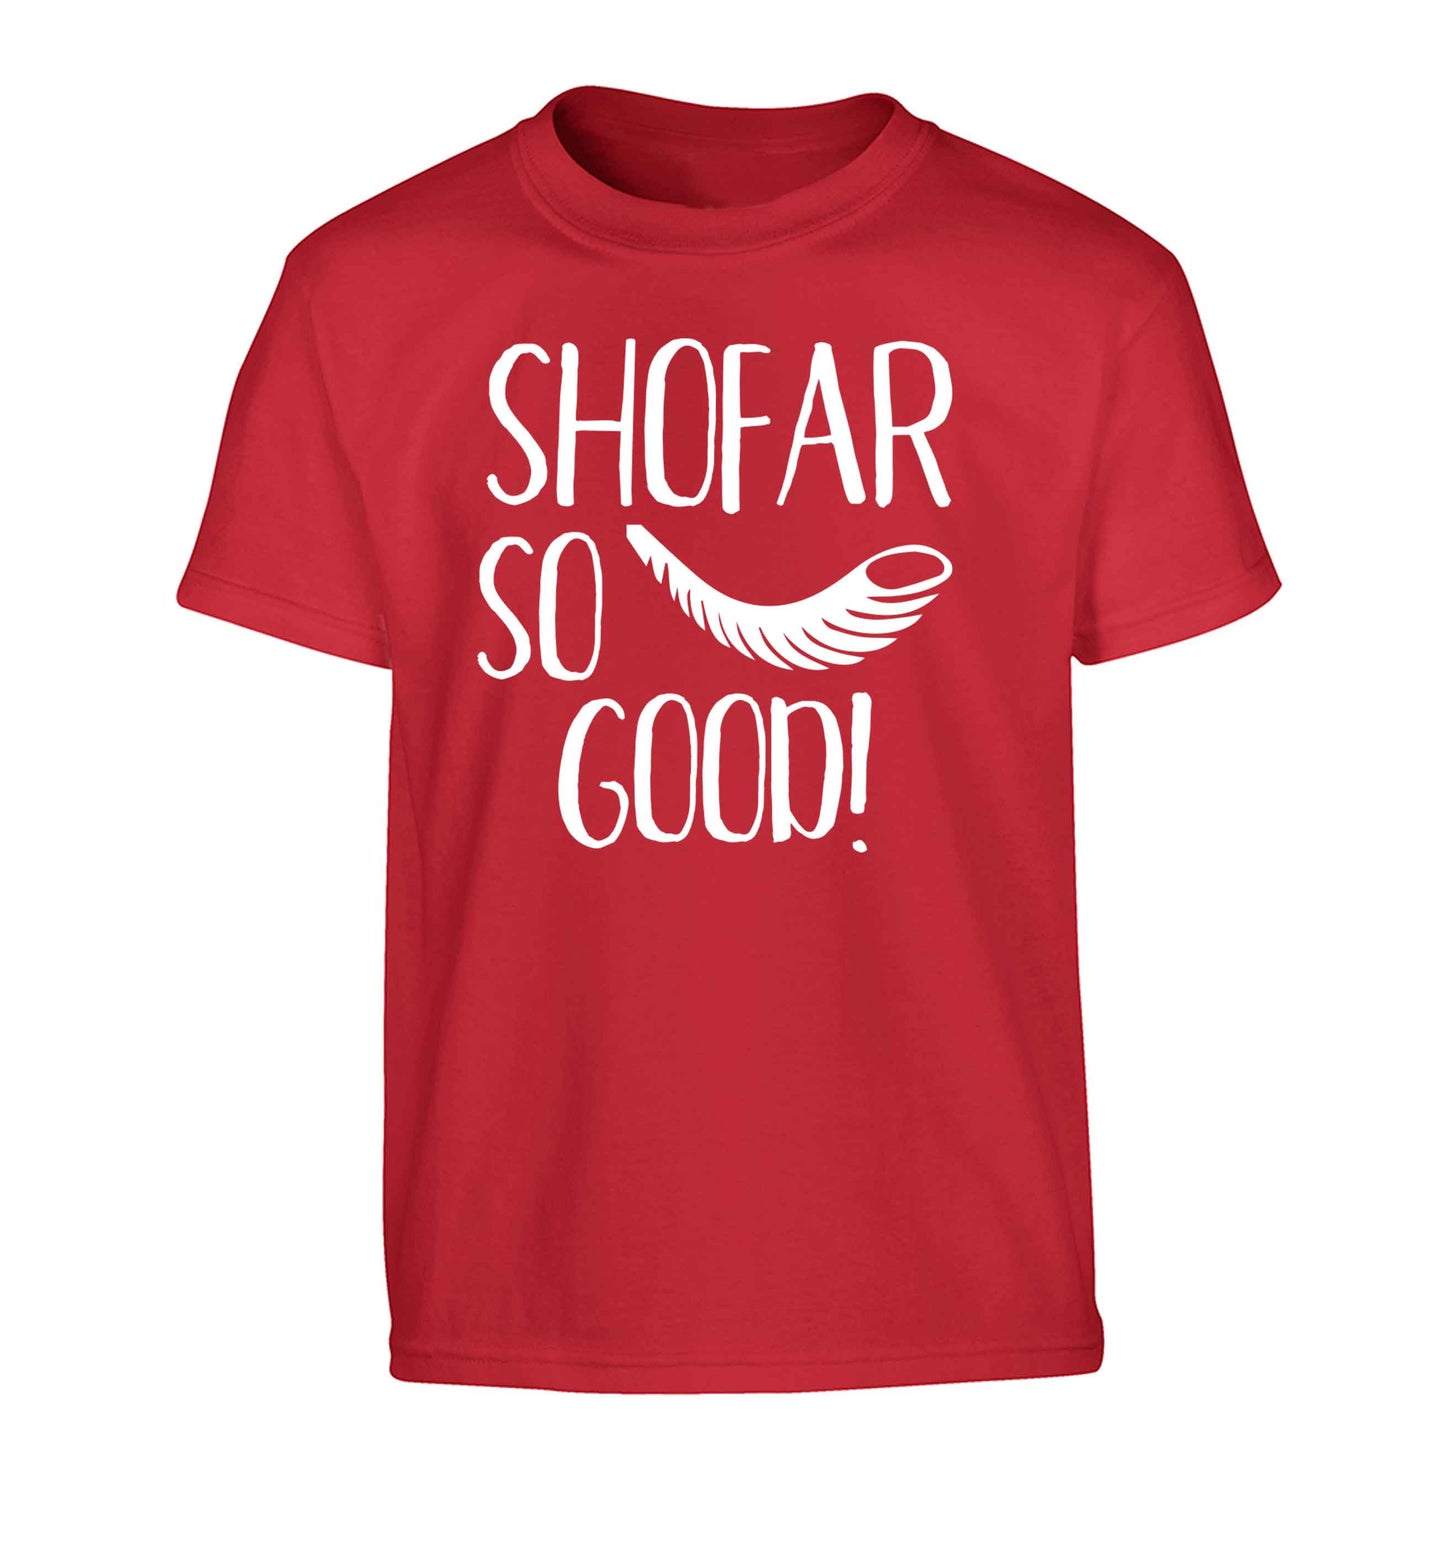 Shofar so good! Children's red Tshirt 12-13 Years